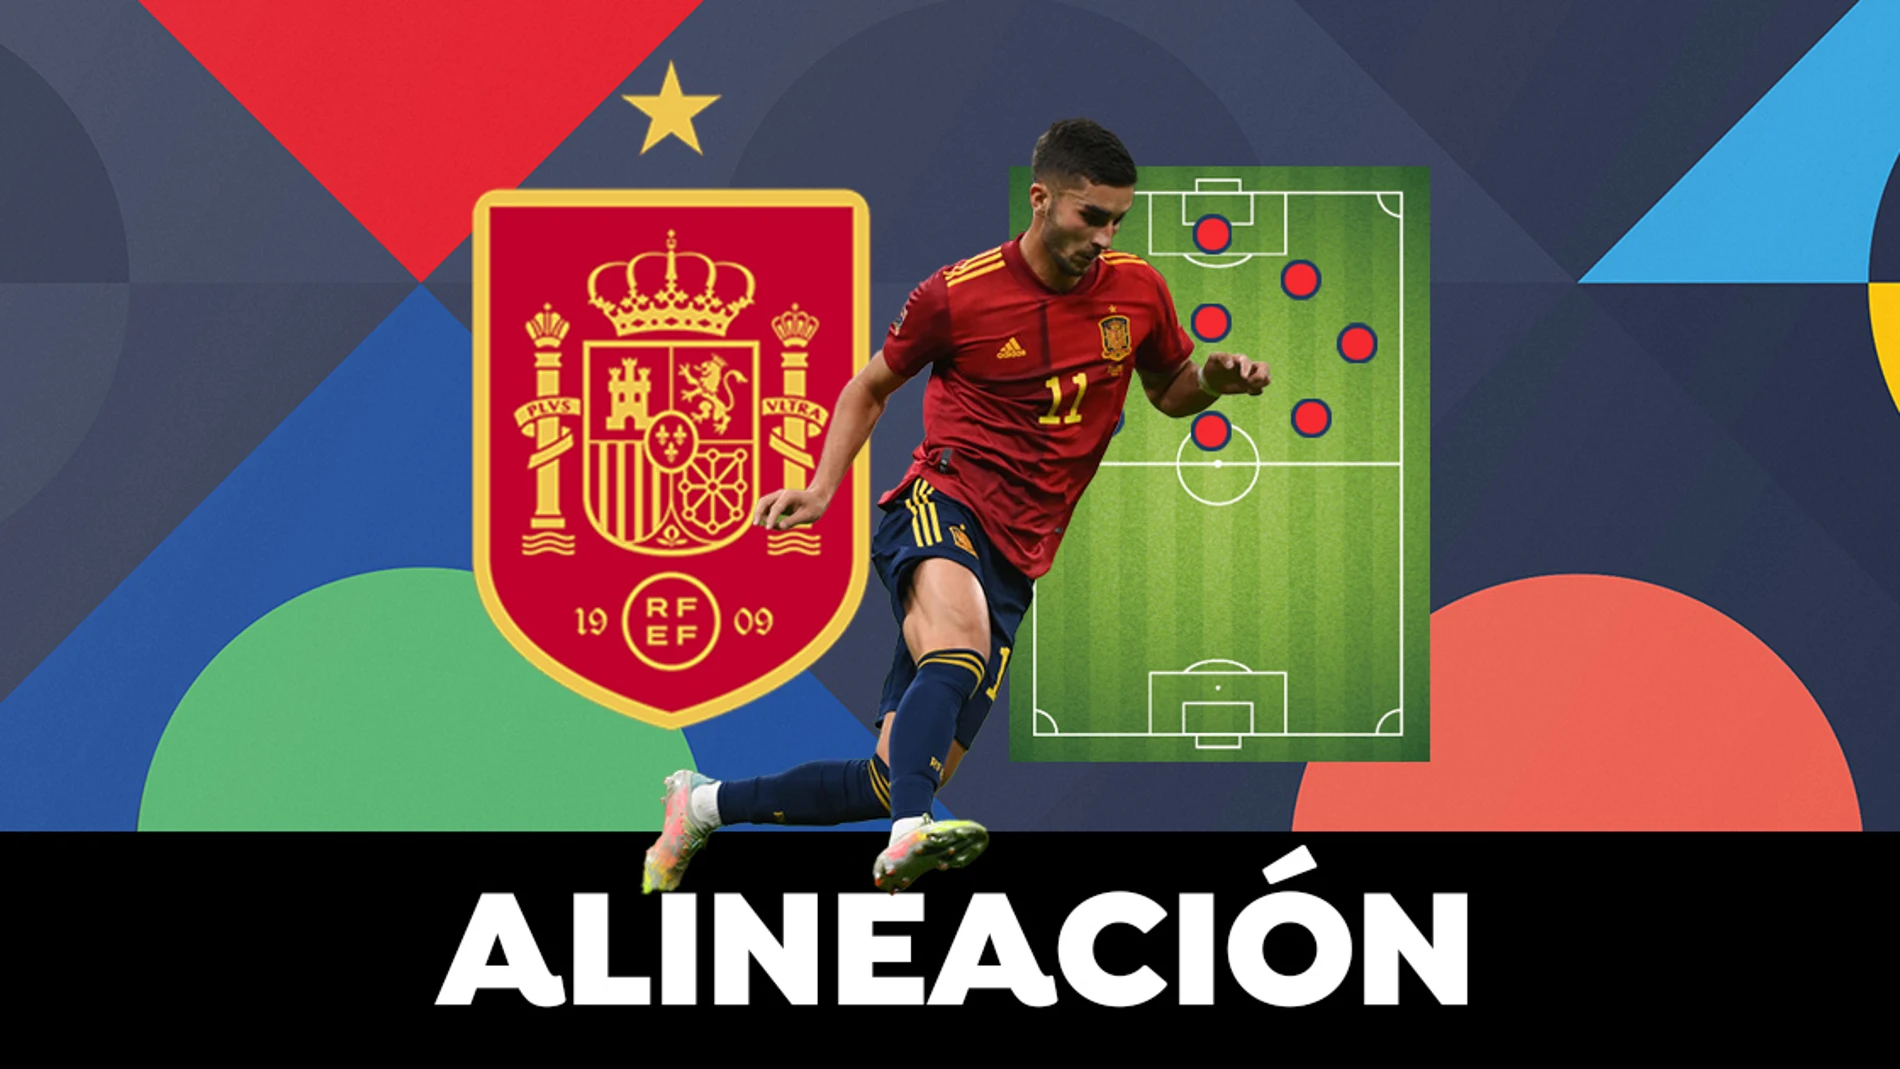 Alineación OFICIAL de España hoy contra Suiza en el partido de la UEFA